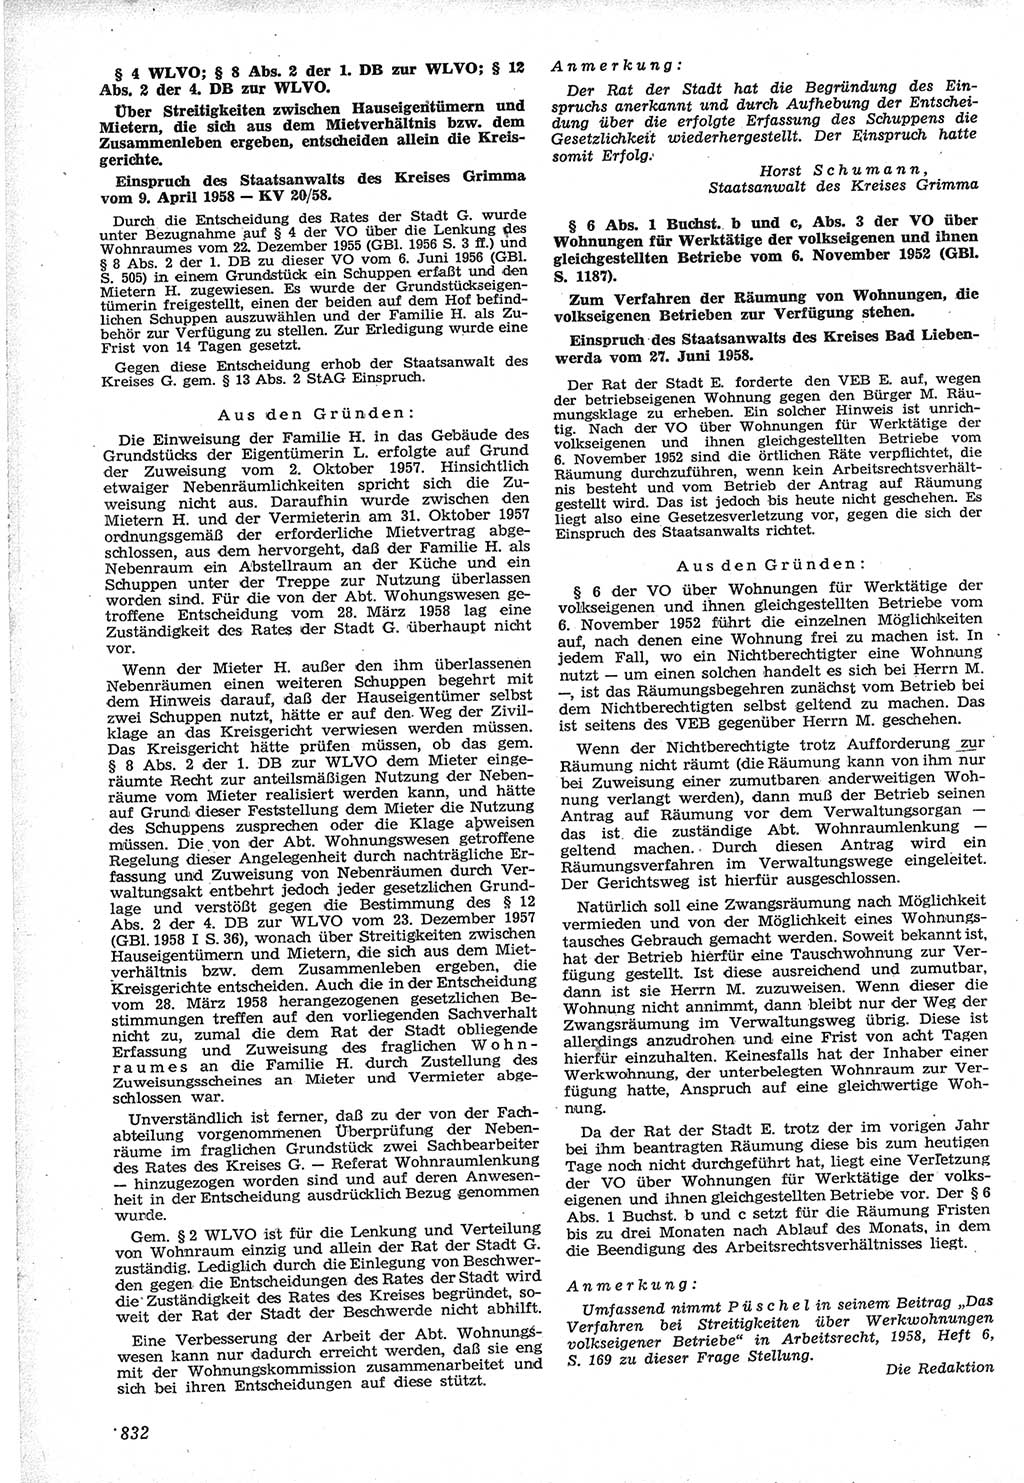 Neue Justiz (NJ), Zeitschrift für Recht und Rechtswissenschaft [Deutsche Demokratische Republik (DDR)], 12. Jahrgang 1958, Seite 832 (NJ DDR 1958, S. 832)